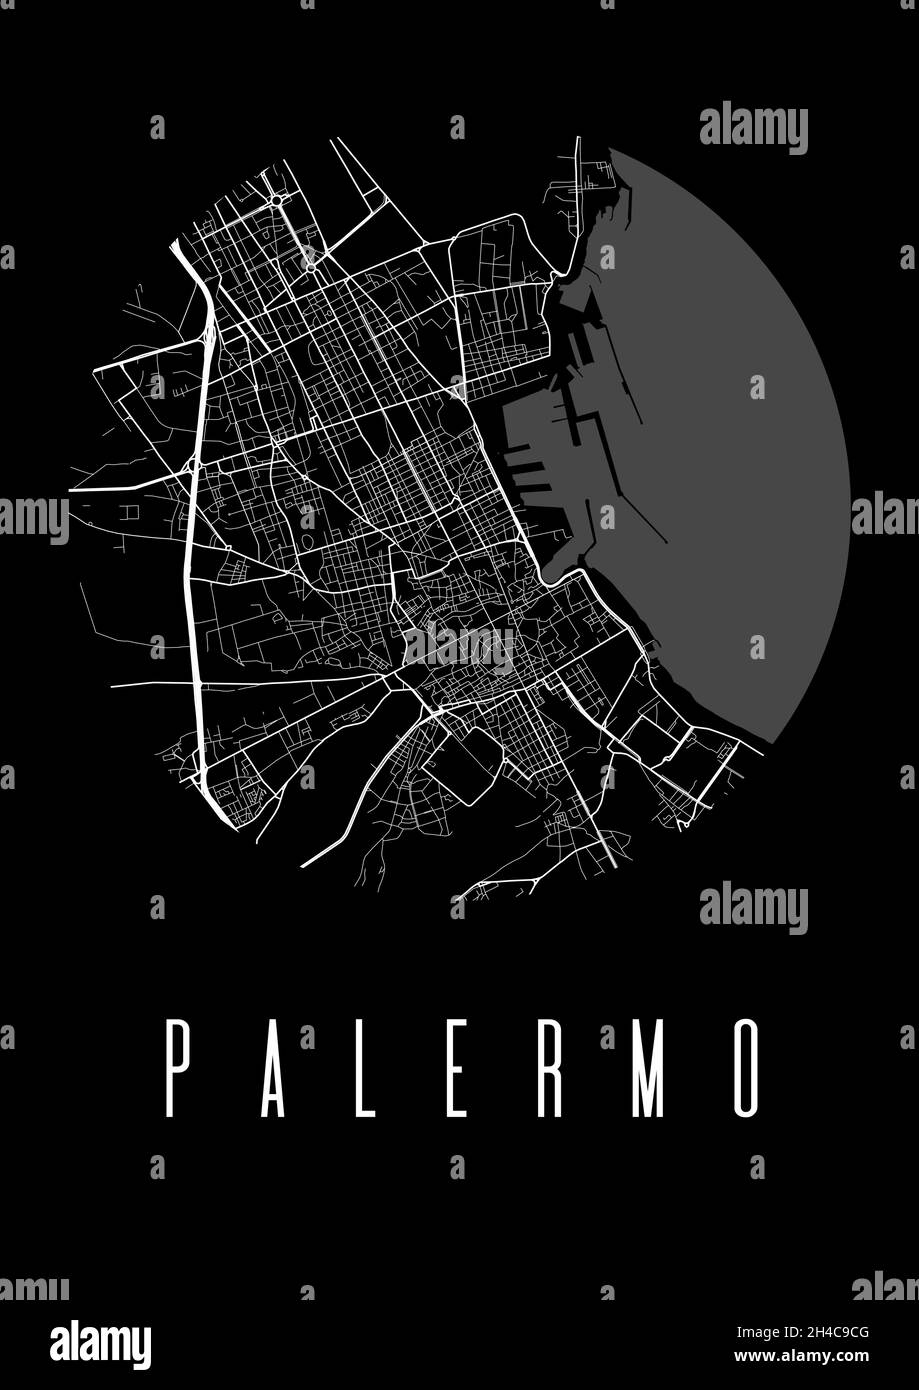 Palermo Kartenvektor schwarzes Poster. Runder Rundblick, Stadtplan von Palermo Stadtdarstellung. Stadtbild Fläche Panorama Silhouette Luftbild, typografisches Stock Vektor